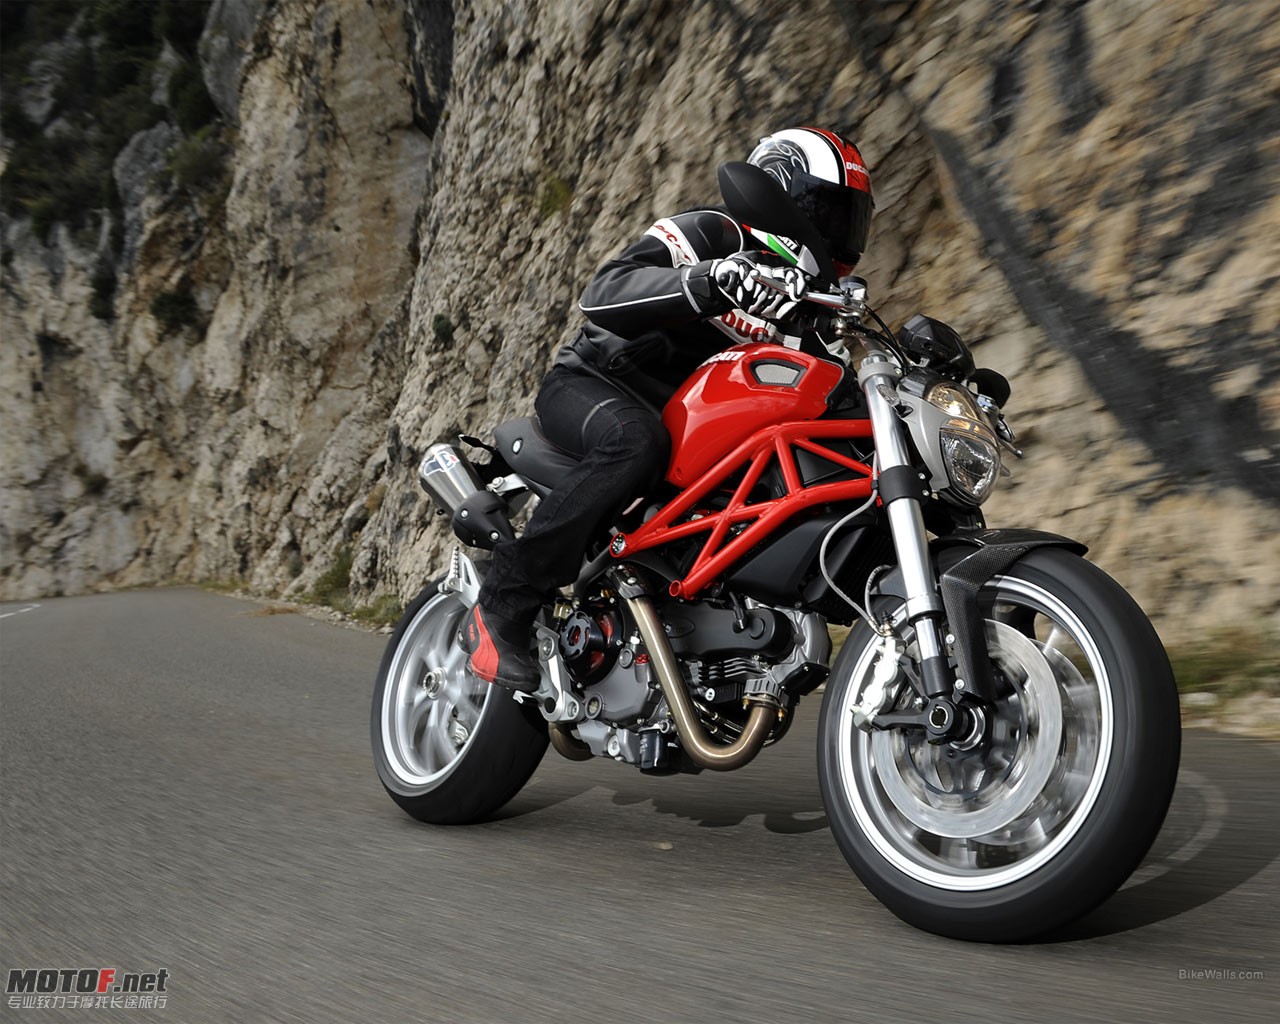 Ducati_Monster_1100_2009_04_1280x1024.jpg